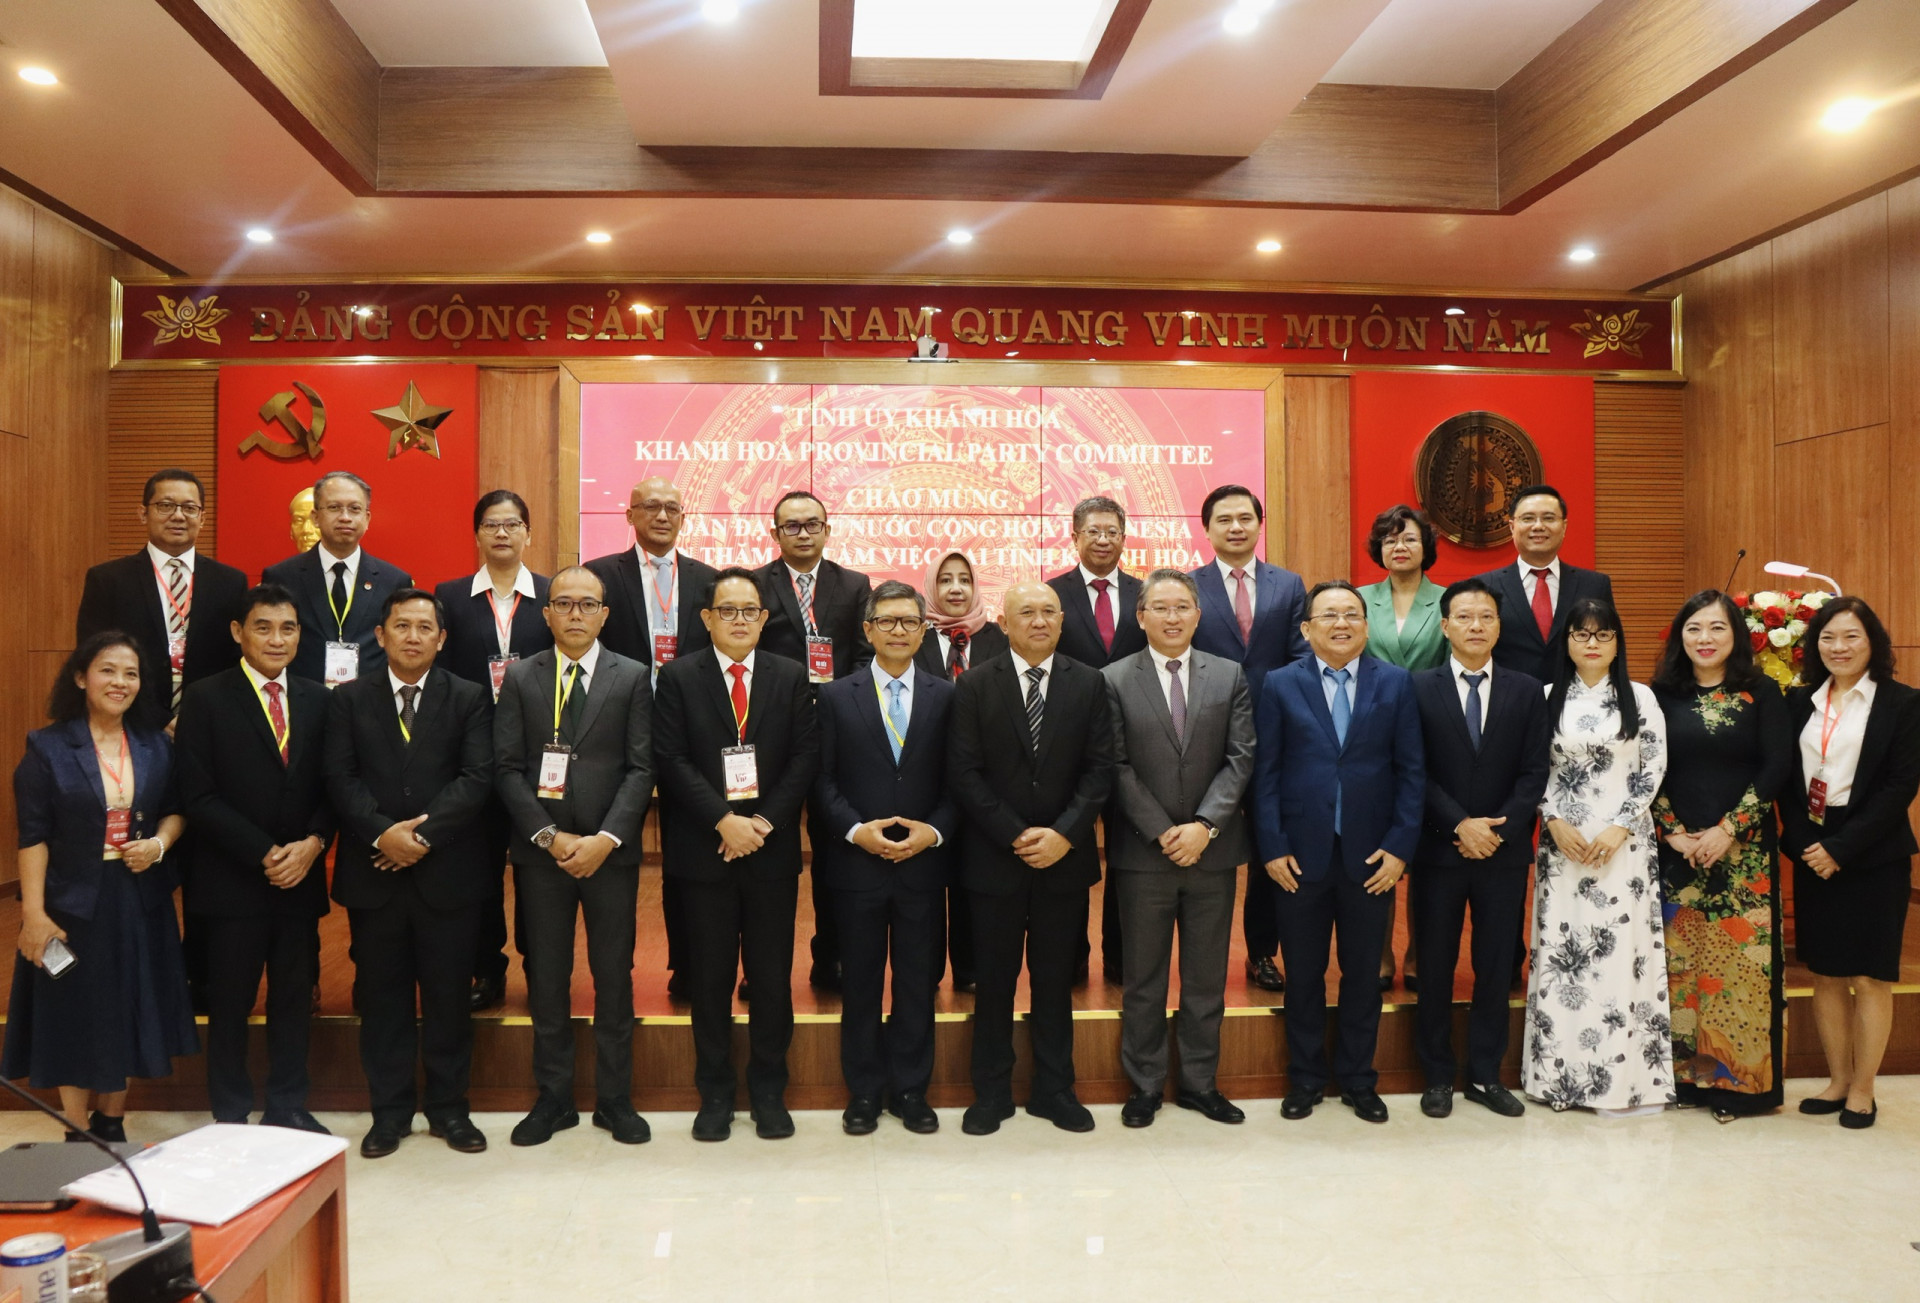 
Bí thư Tỉnh ủy Nguyễn Hải Ninh cùng lãnh đạo tỉnh Khánh Hòa chụp ảnh lưu niệm với Đoàn đại biểu Indonesia
